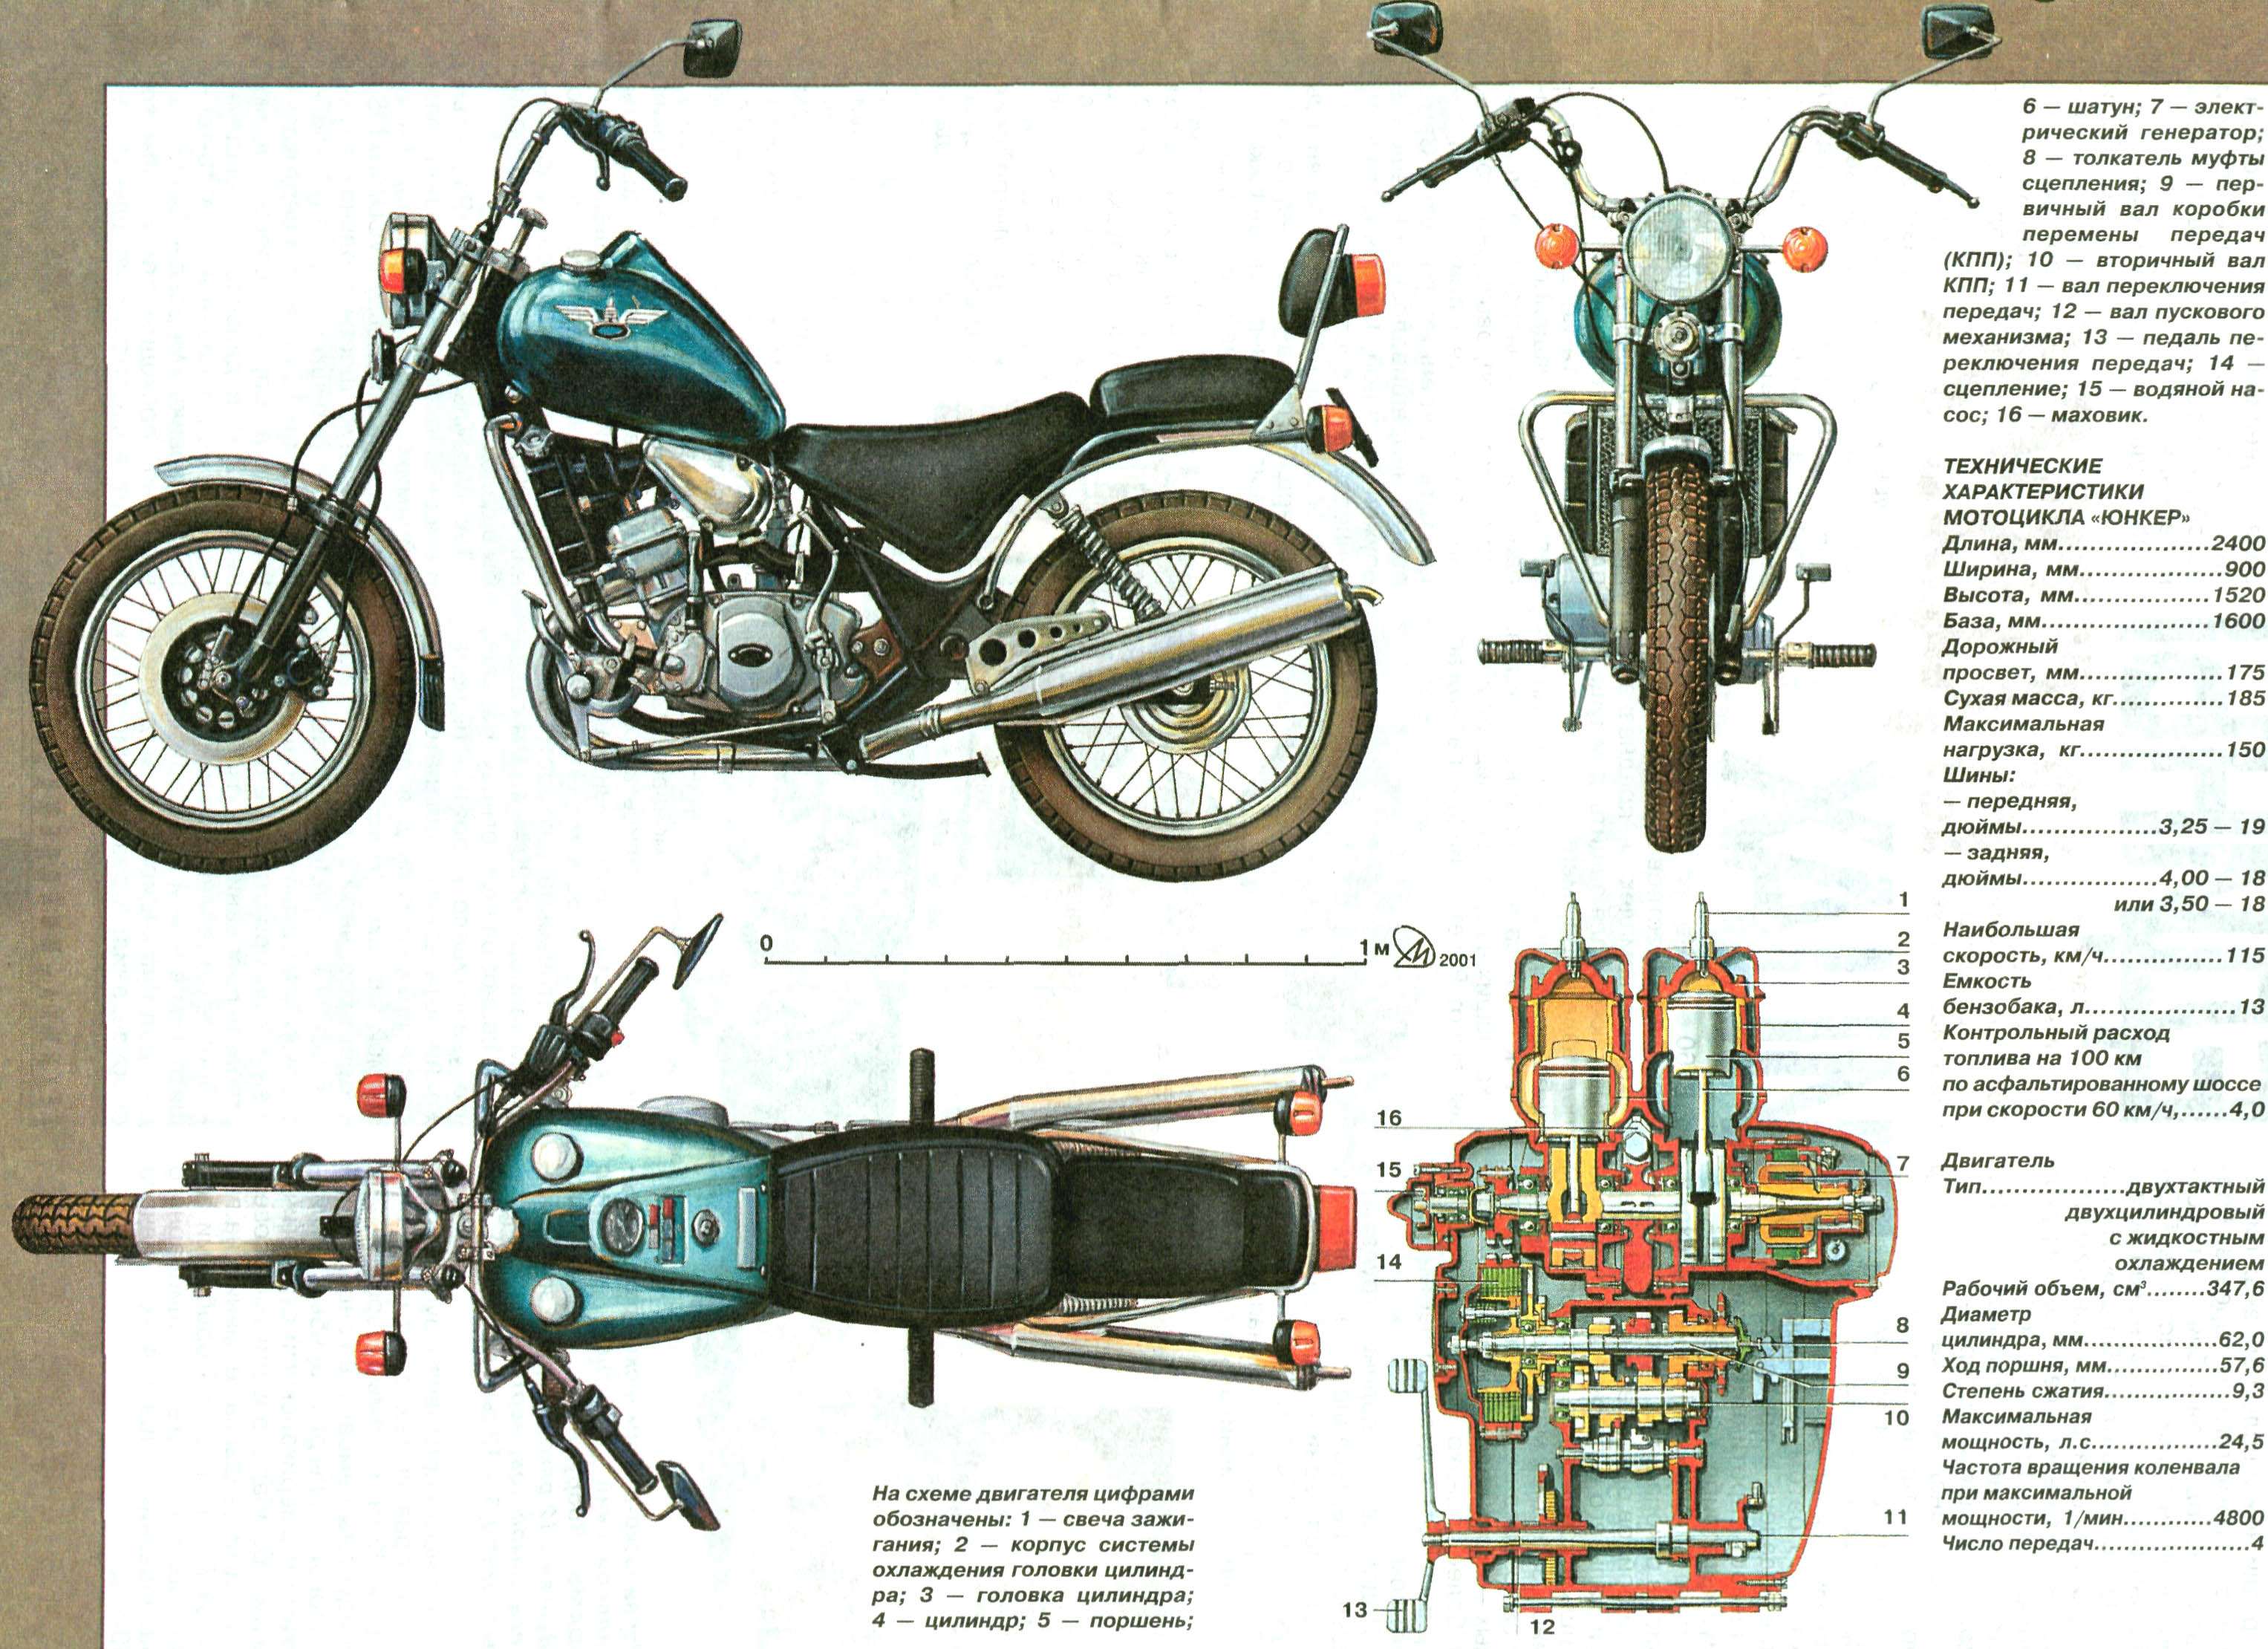 Из чего состоит мотоцикл. Строение мотоцикла ИЖ Юпитер 5. Из чего состоит мотоцикл ИЖ Планета 5. Конструкция двигателя ИЖ Планета 2. Габариты мотоцикла ИЖ Планета 2.